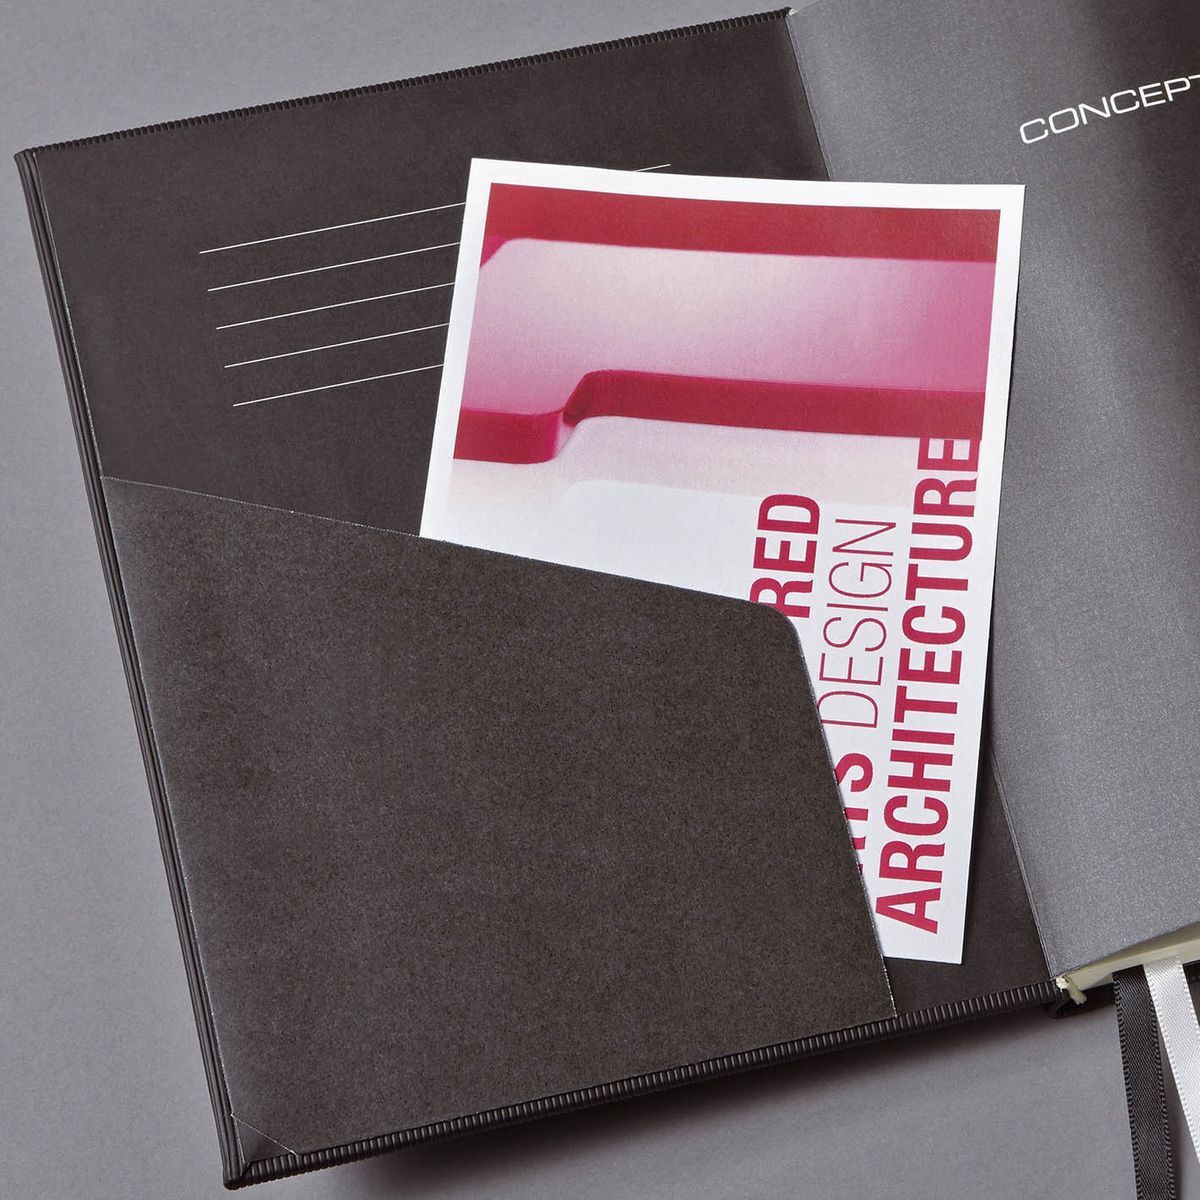 Notizbuch Conceptum - A4+, kariert, 194 Seiten, schwarz, Hardcover, Magnetverschluss